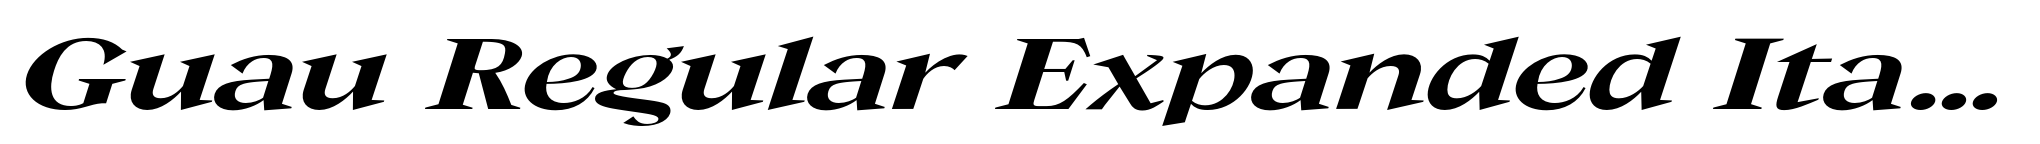 Guau Regular Expanded Italic image